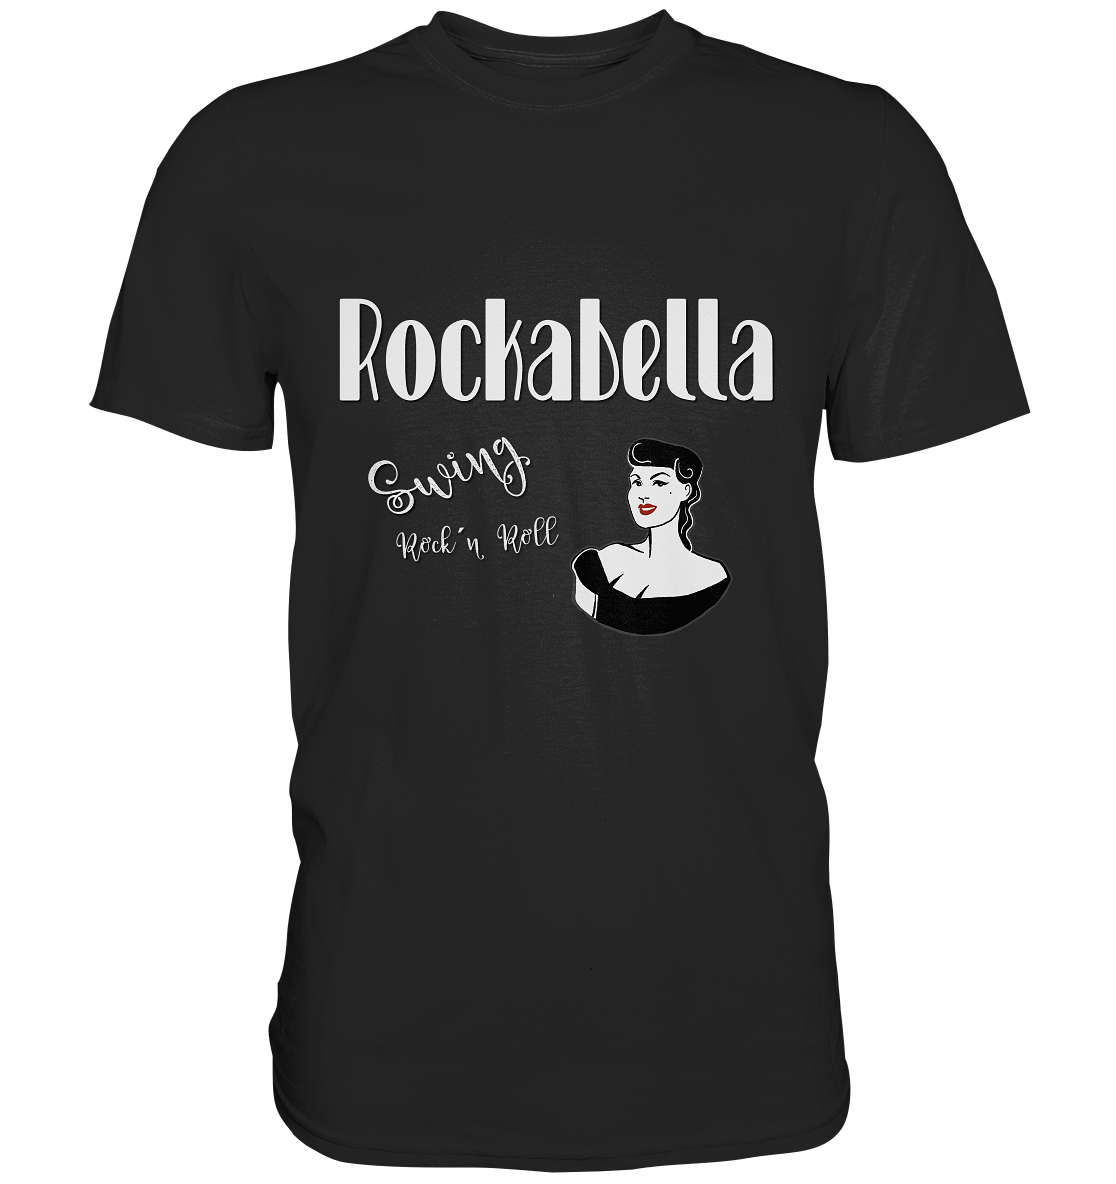 Rockabella. Swing. Rockybilly - Unisex Premium Shirt